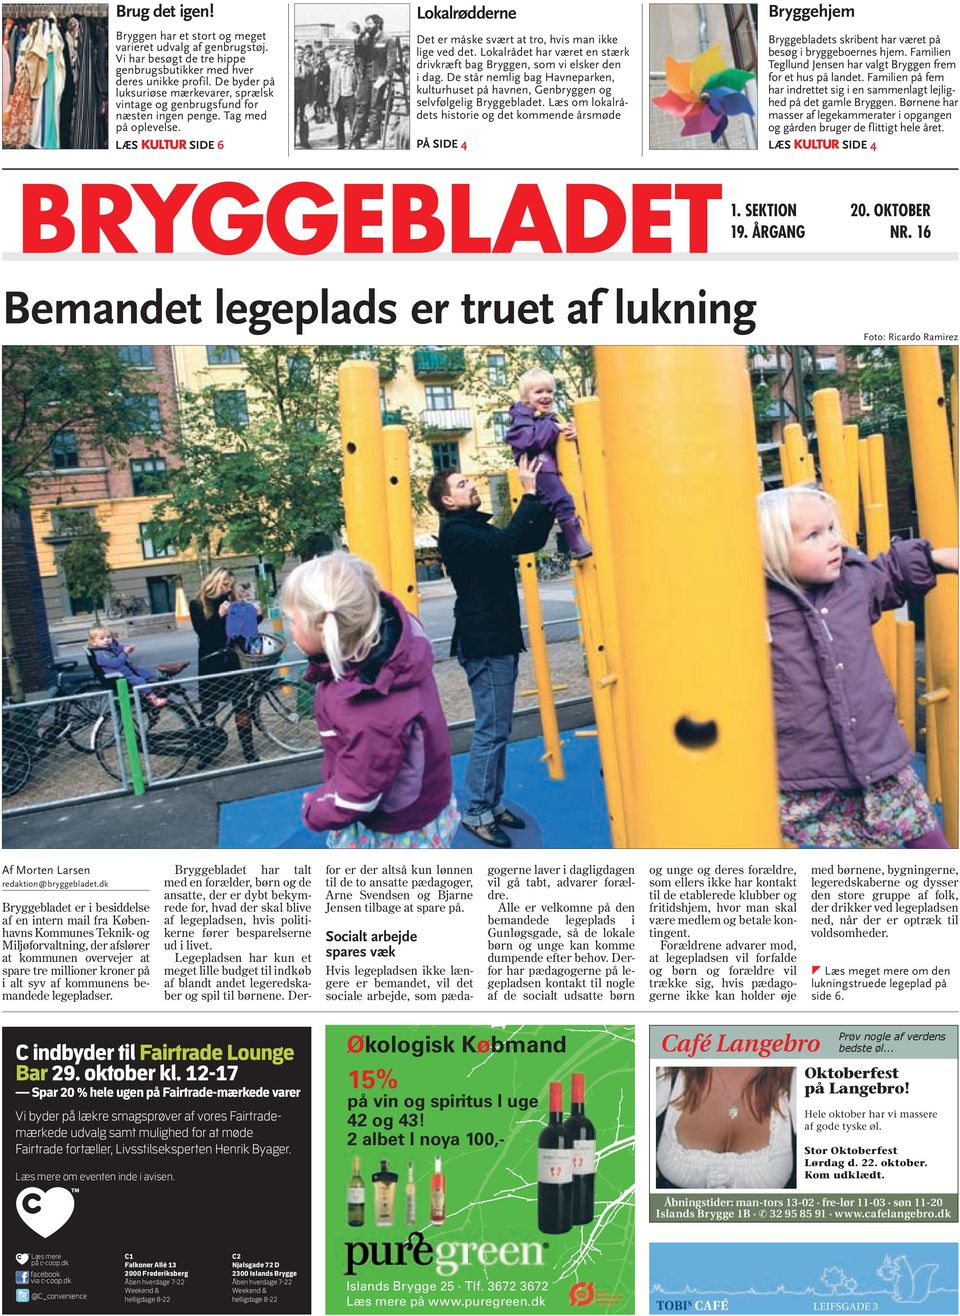 Lokalrådet har været en stærk drivkræft bag Bryggen, som vi elsker den i dag. De står nemlig bag Havneparken, kulturhuset på havnen, Genbryggen og selvfølgelig Bryggebladet.